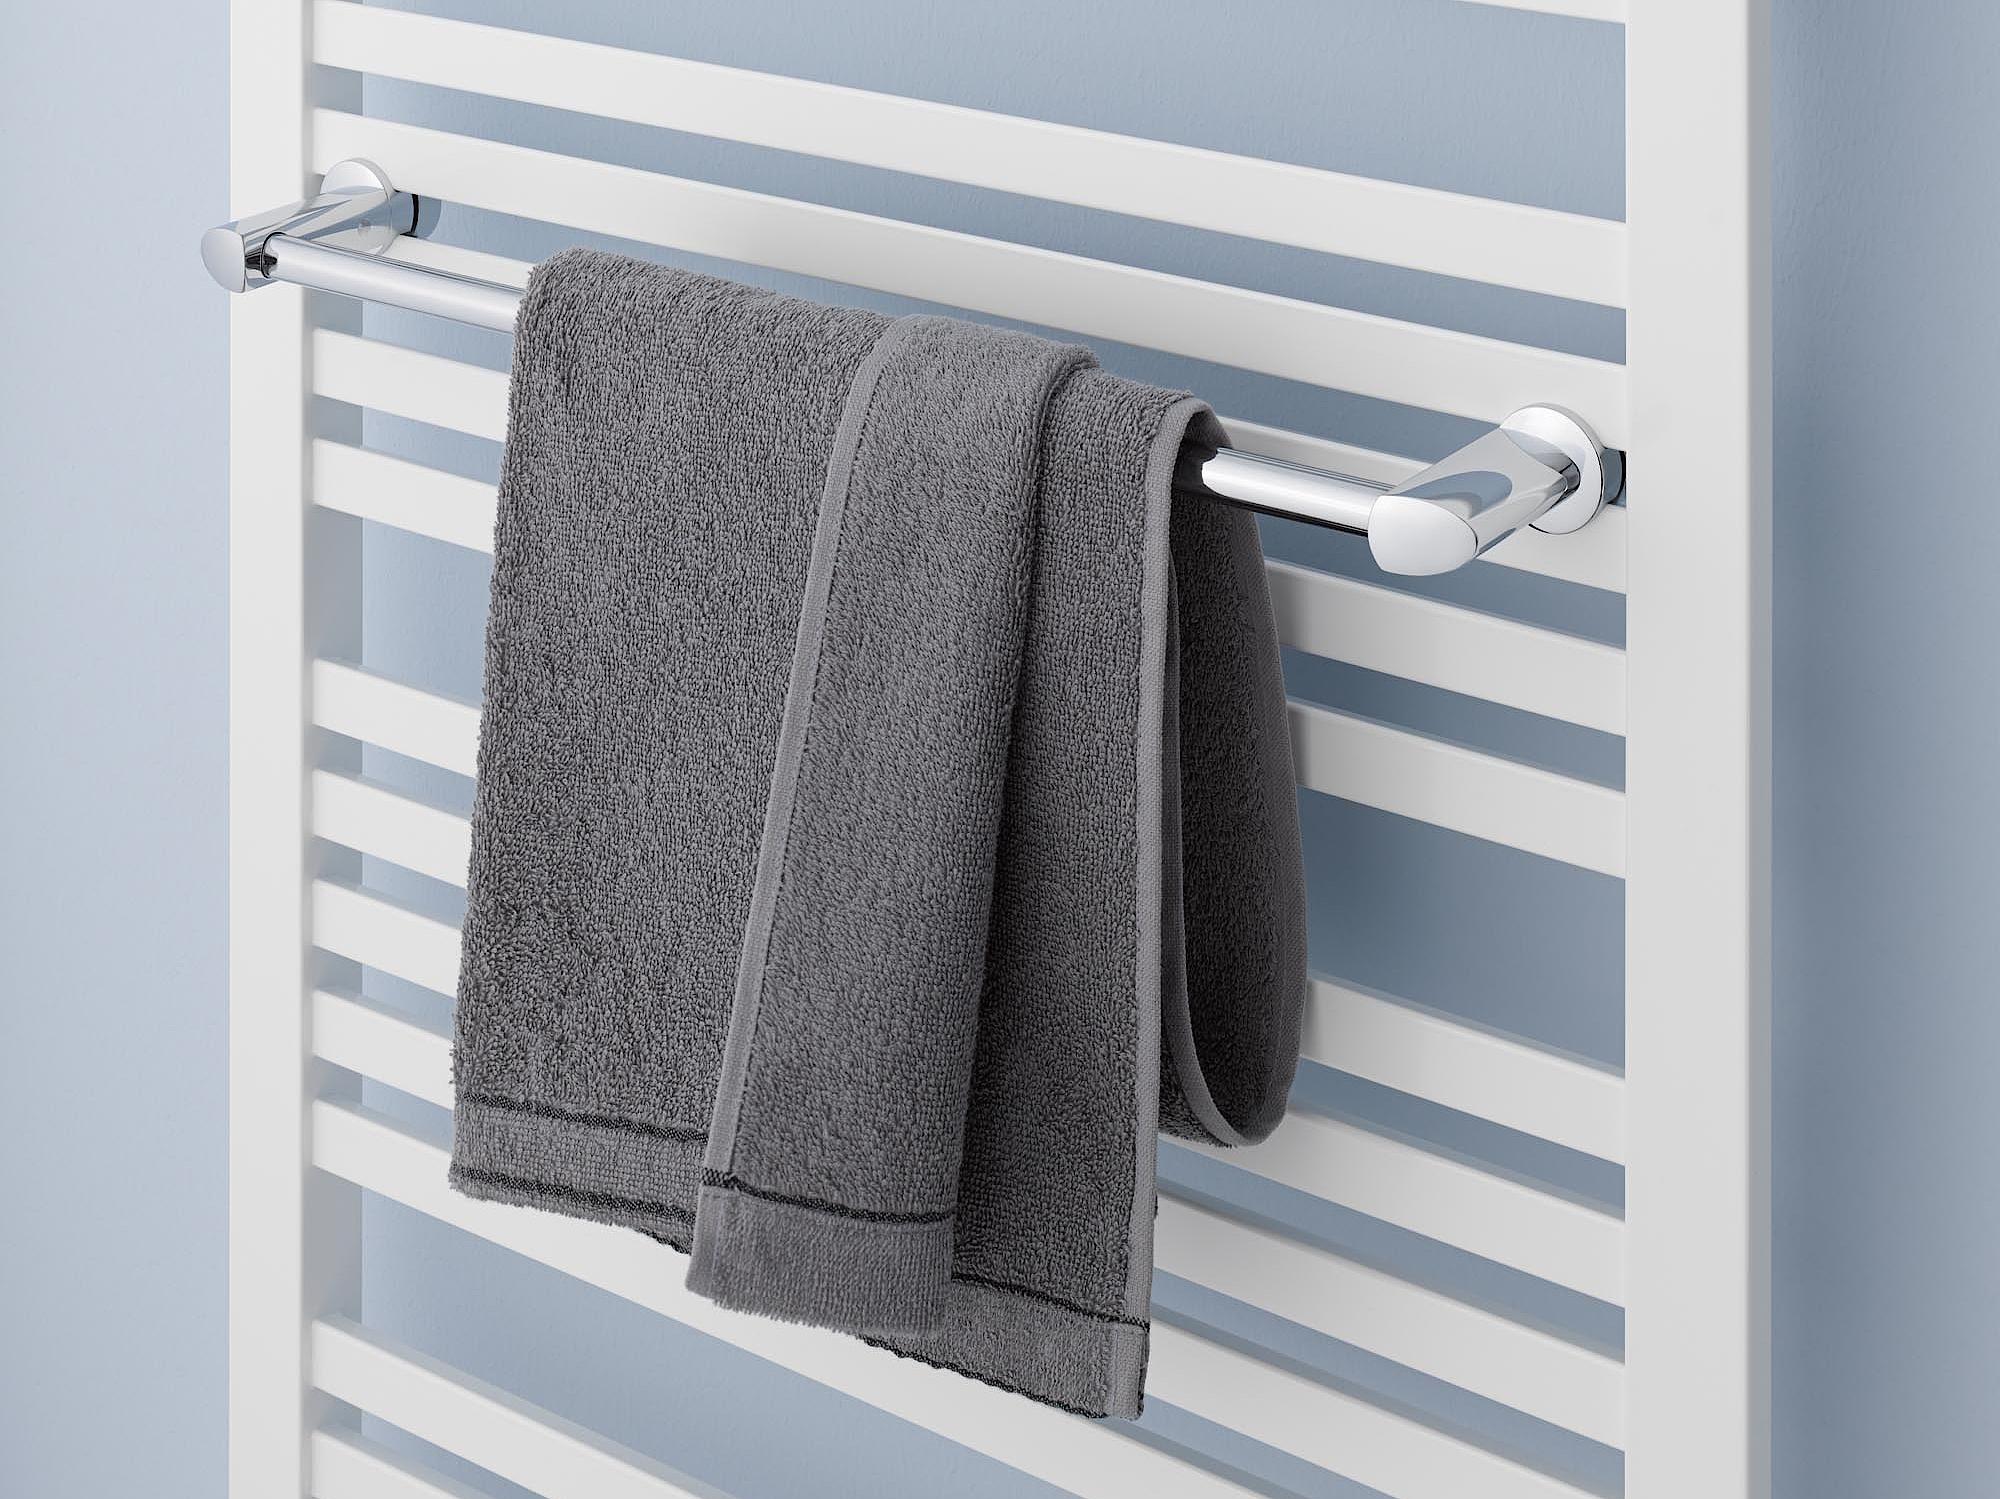 Radiateur design et de salle de bain Geneo quadris de Kermi barre porte-serviettes.